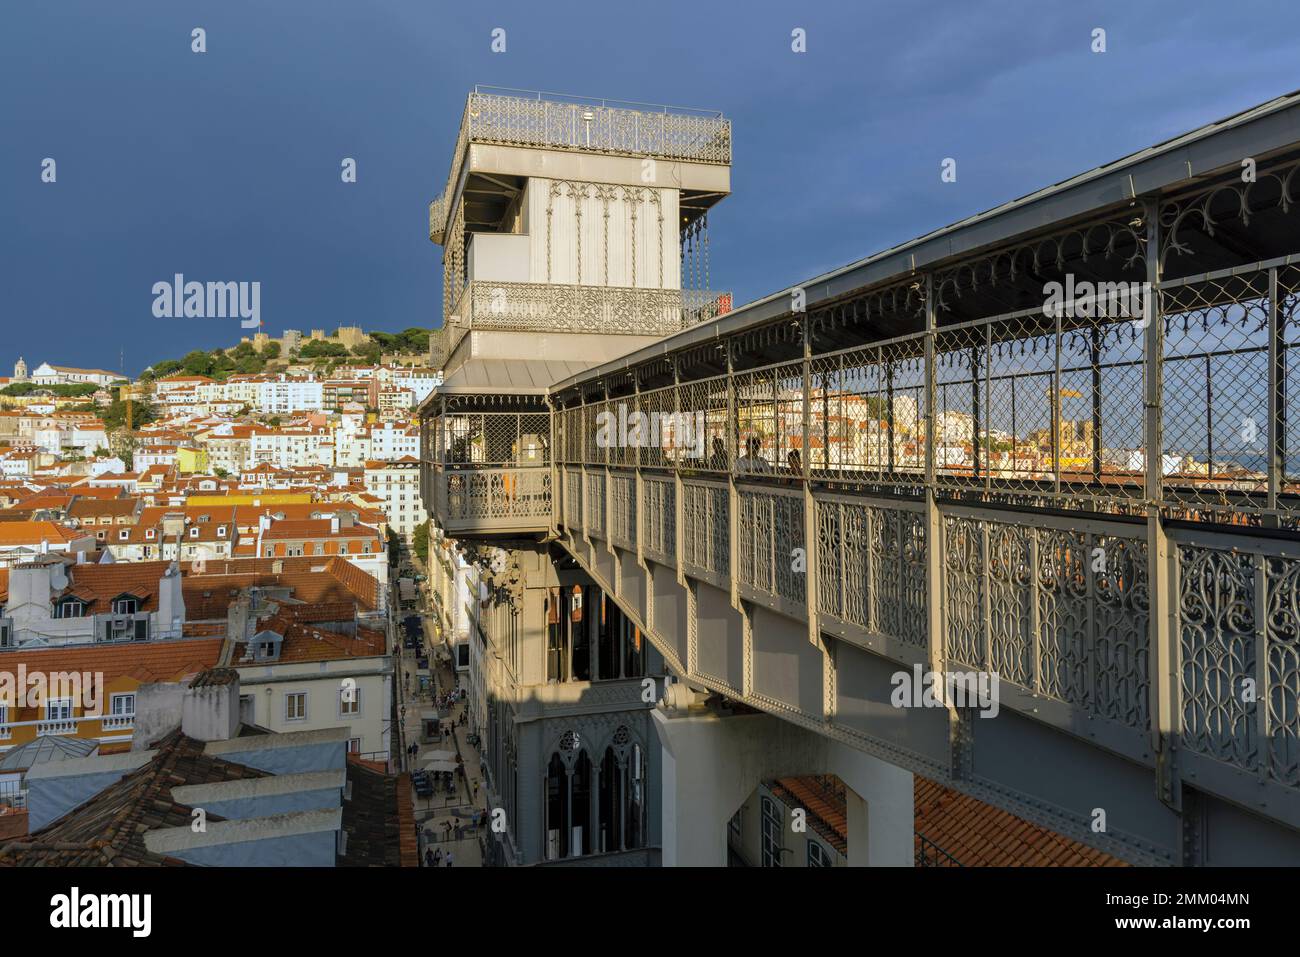 Lisbonne, Portugal. La passerelle de Largo do Carmo jusqu'à l'ascenseur de Santa Justa, également connu sous le nom de l'ascenseur de Carmo, et vue sur le château de St. George. Le 45meter Banque D'Images